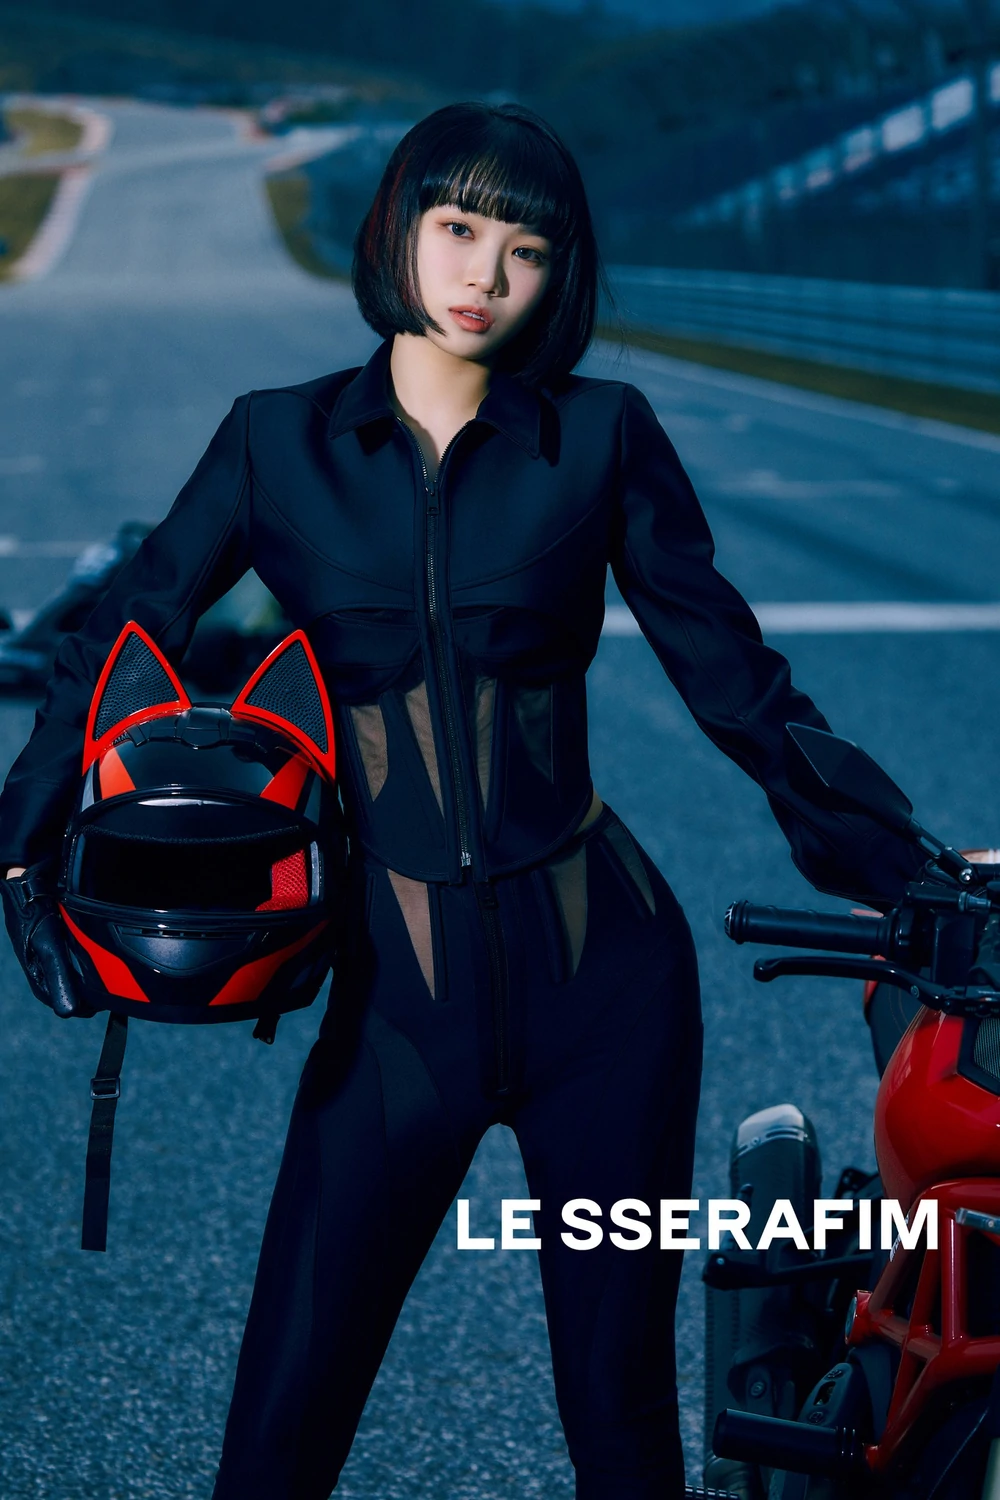 Le Sserafim I'm Fearless Chaewon Concept Teaser Picture Image Photo Kpop K-Concept 2